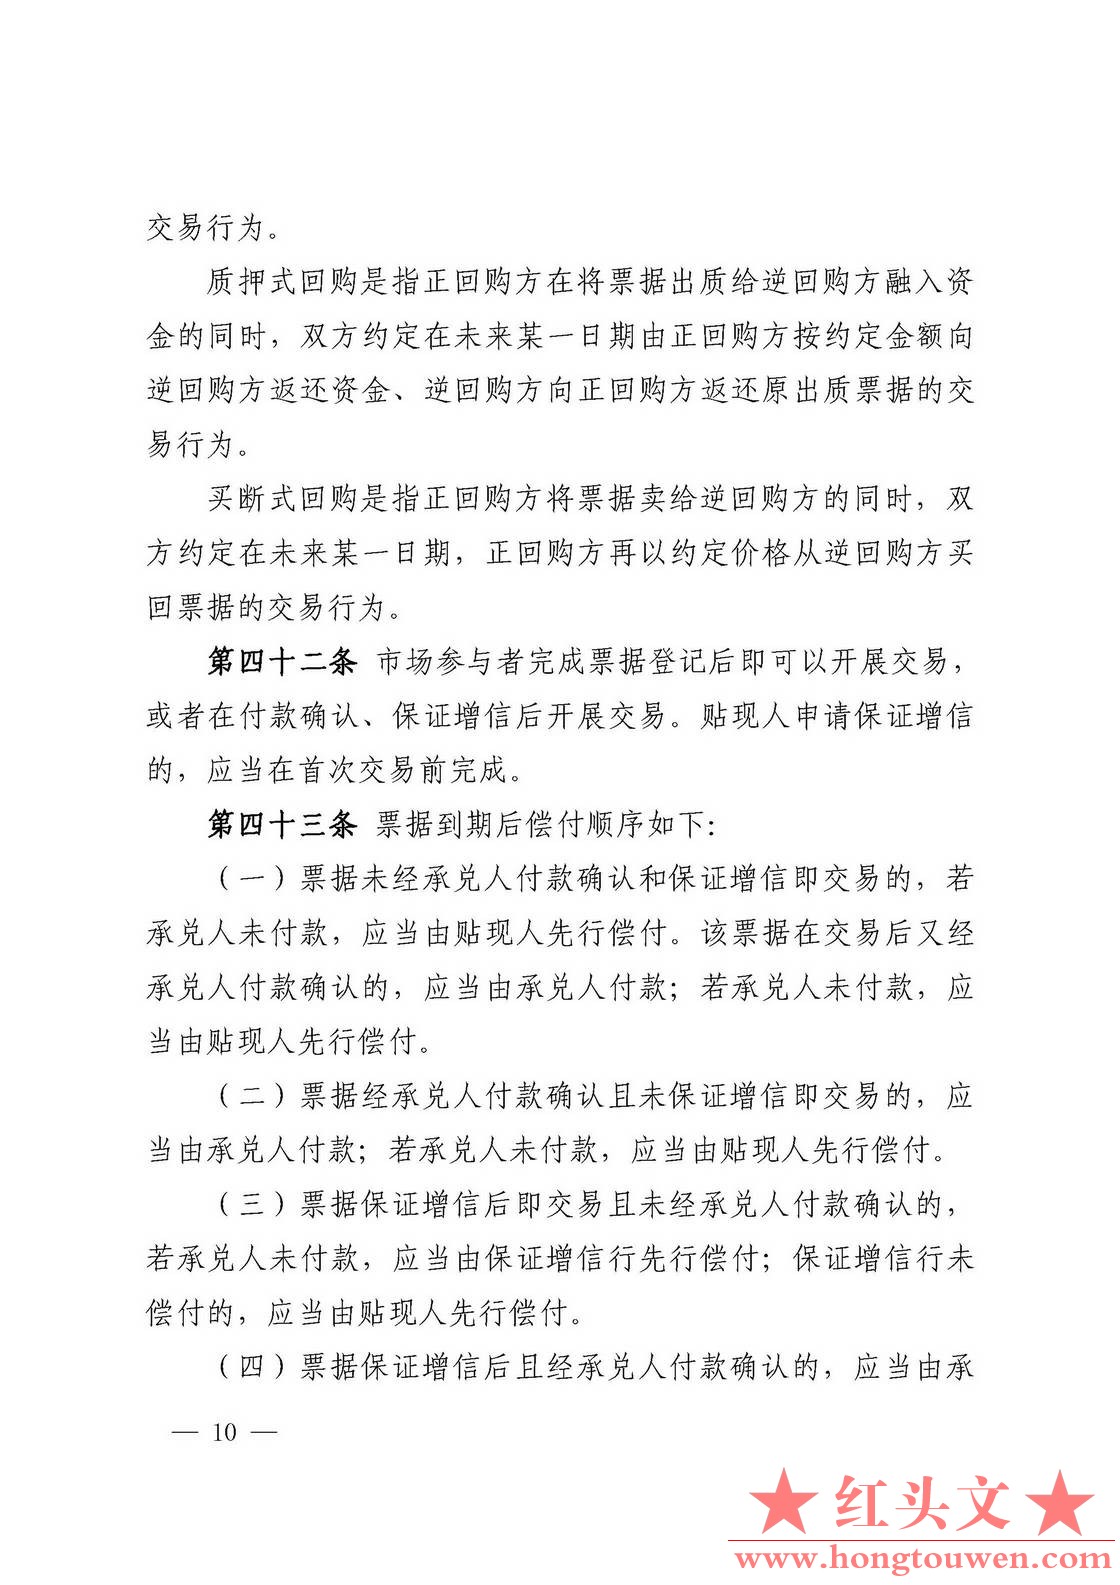 中国人民银行公告[2016]9号-票据交易管理办法_页面_10.jpg